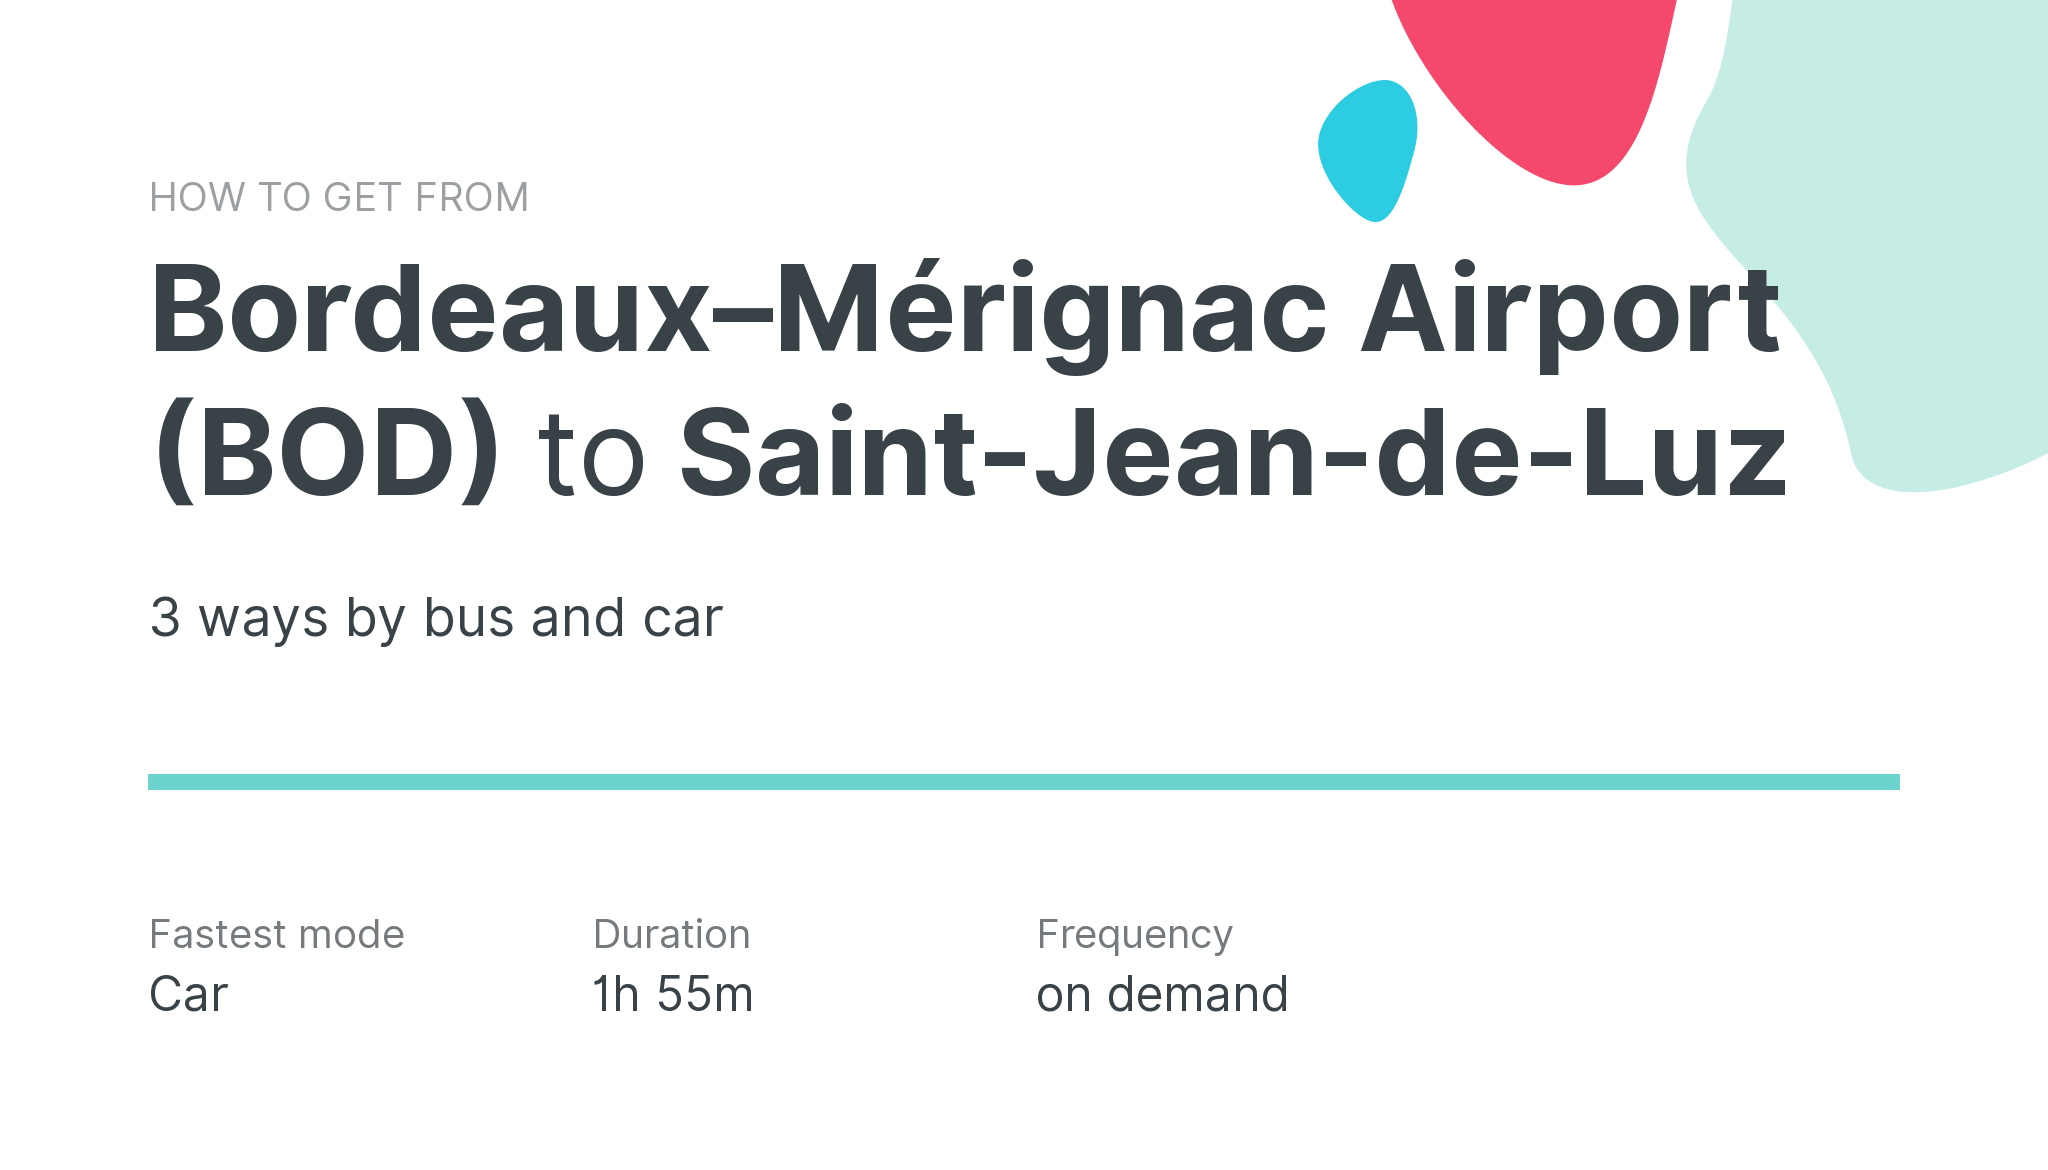 How do I get from Bordeaux–Mérignac Airport (BOD) to Saint-Jean-de-Luz